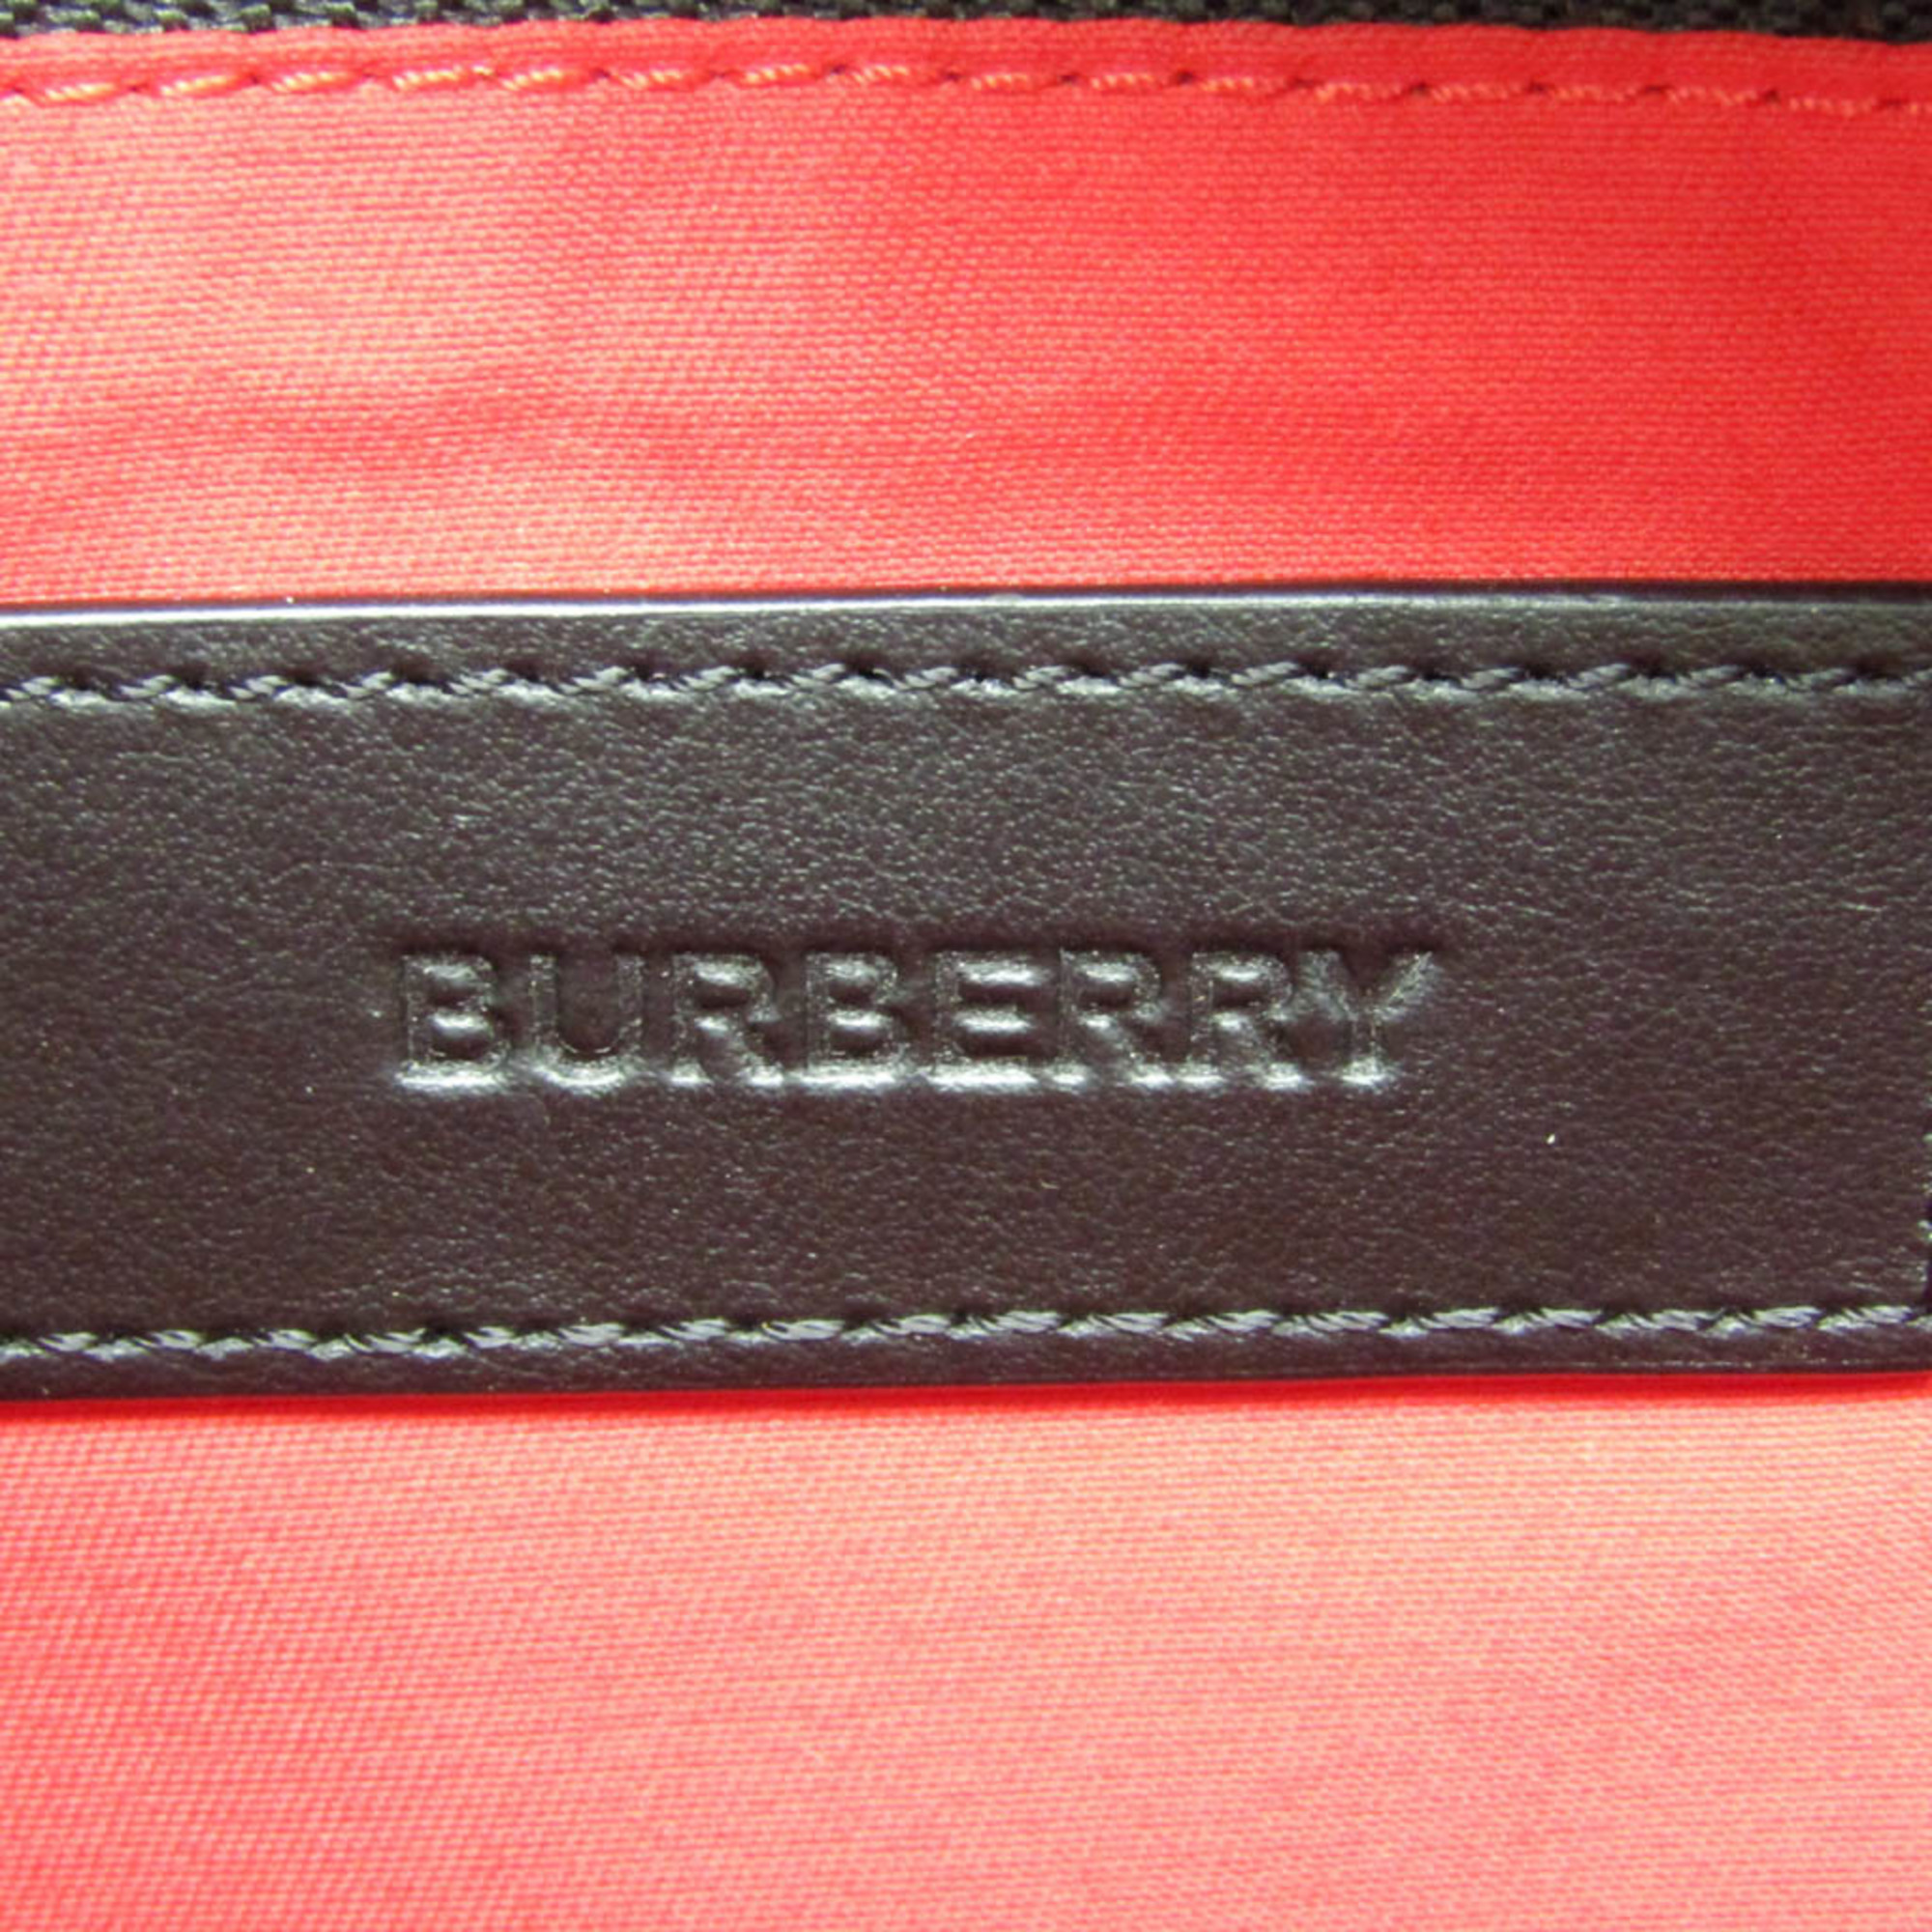 バーバリー(Burberry) ポートレート 8017483 レディース,メンズ ポリエステル,コットン クラッチバッグ ベージュ